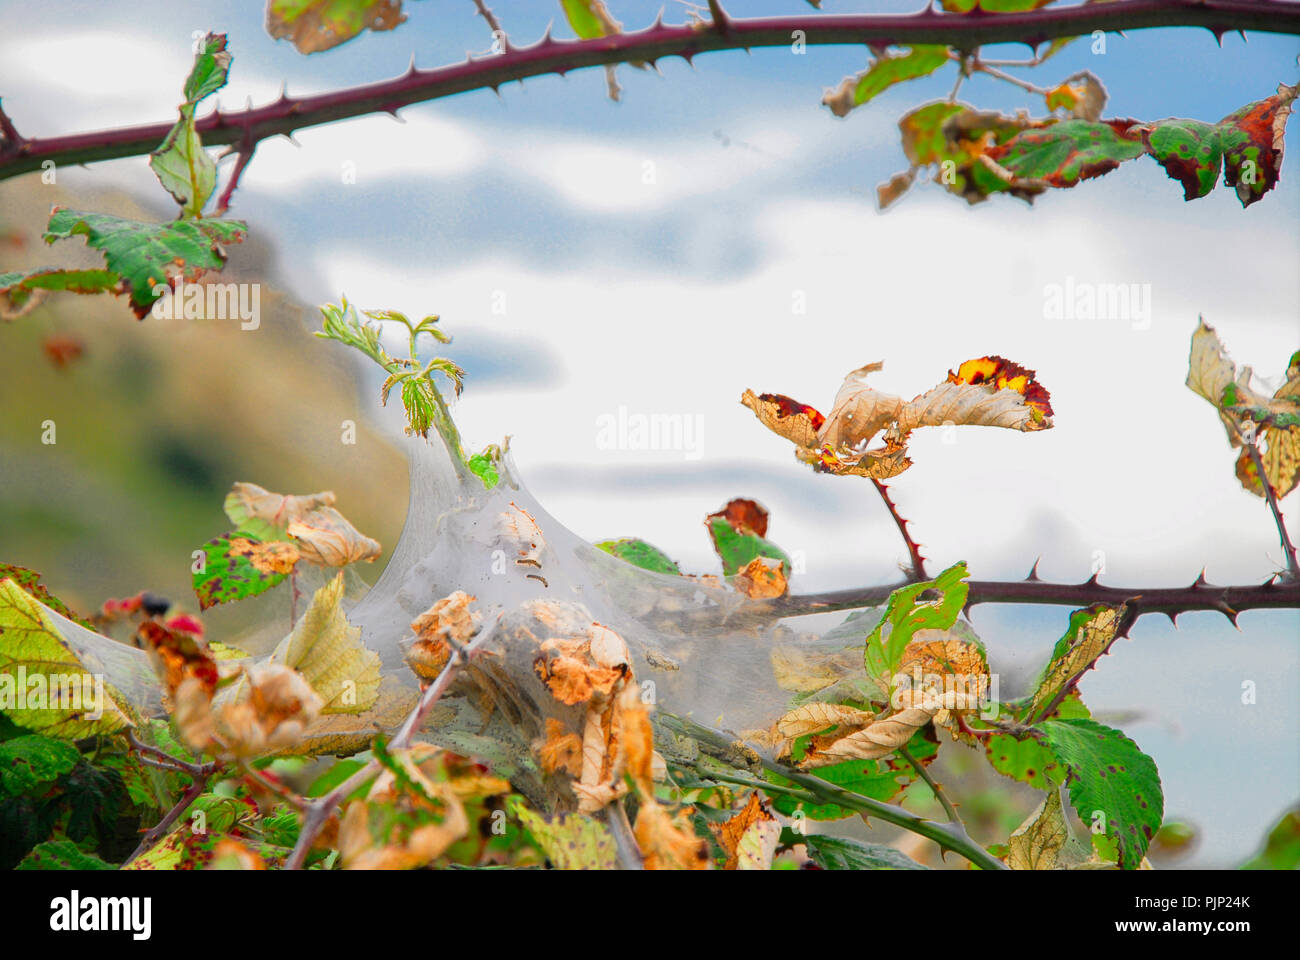 Plage de Chesil. Le 8 septembre 2018. 'Hyponomeute du pommier' chenilles ont tissé des toiles autour des feuilles de mûriers sur la plage de Chesil. Cela les protège, et leur nourriture, des prédateurs Banque D'Images